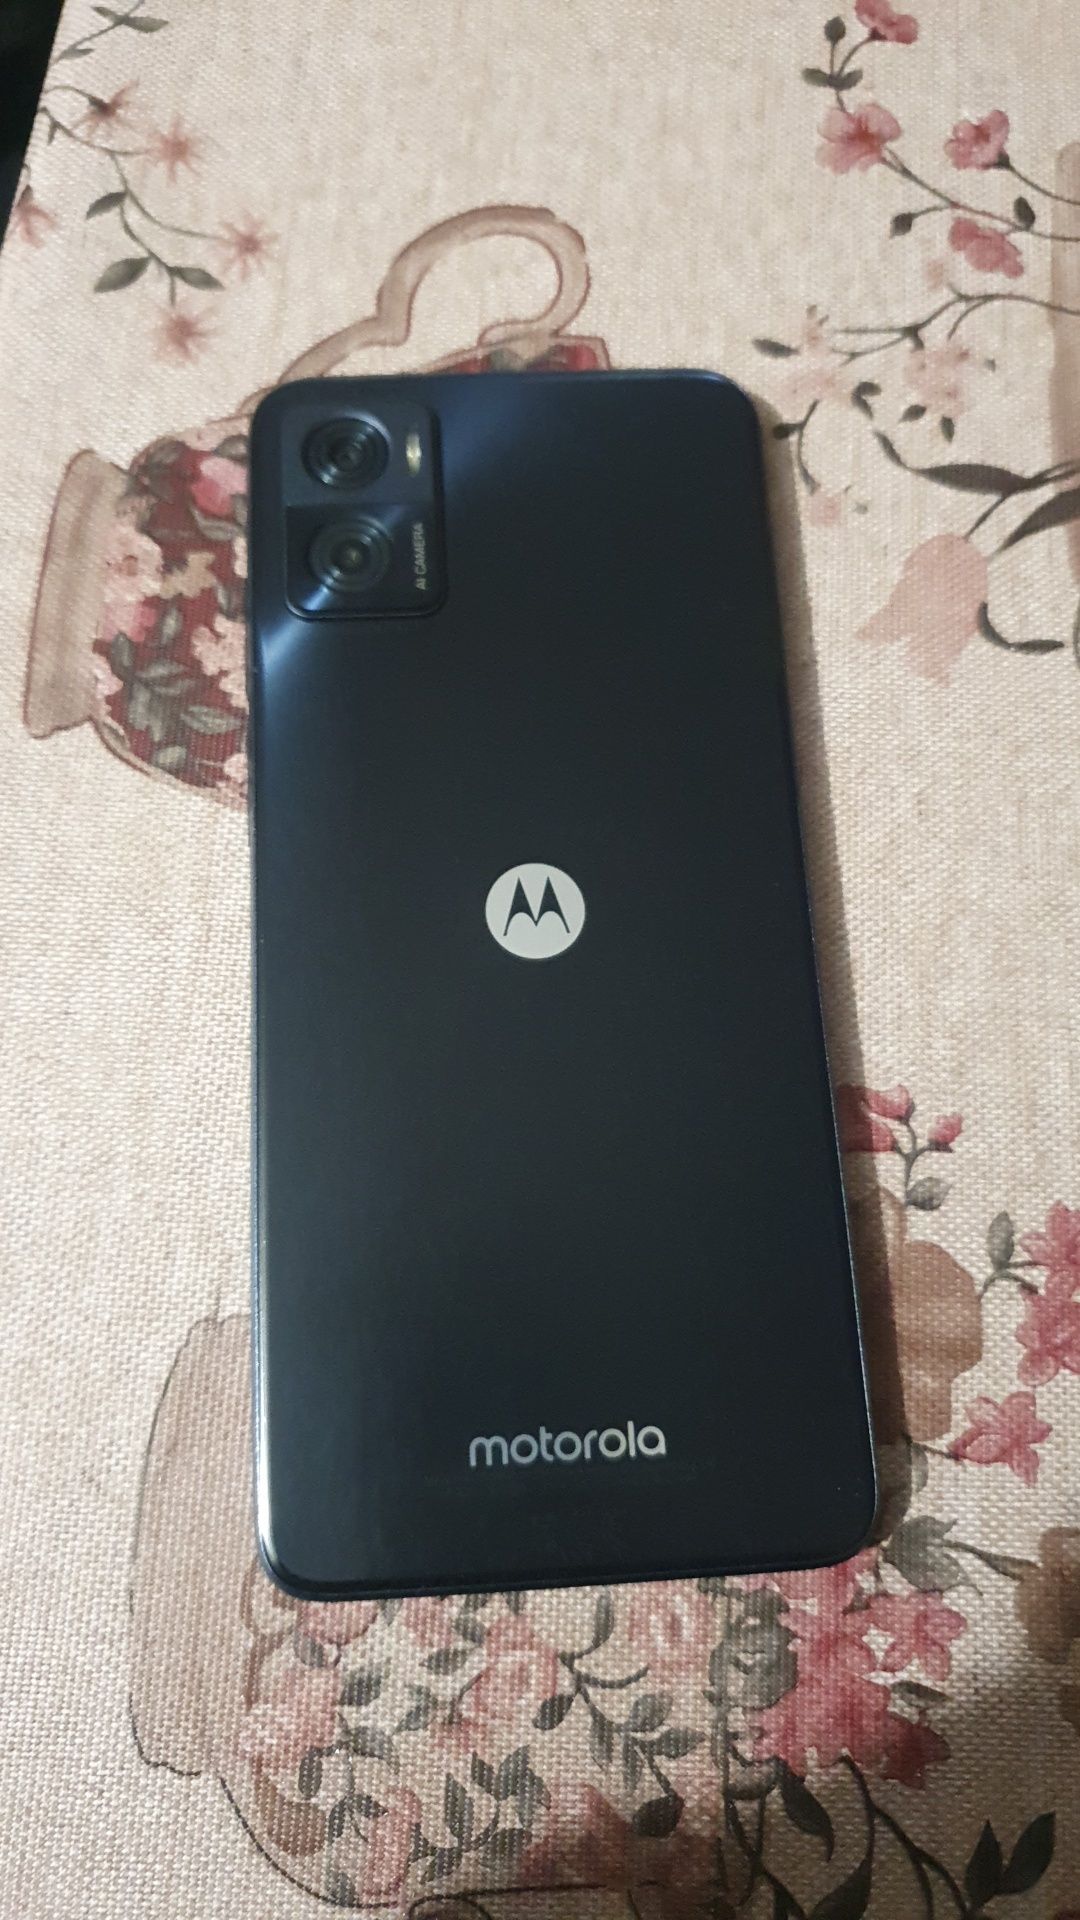 Vând Motorola e22 în stare perfecta de funcționare folosit doua săptăm